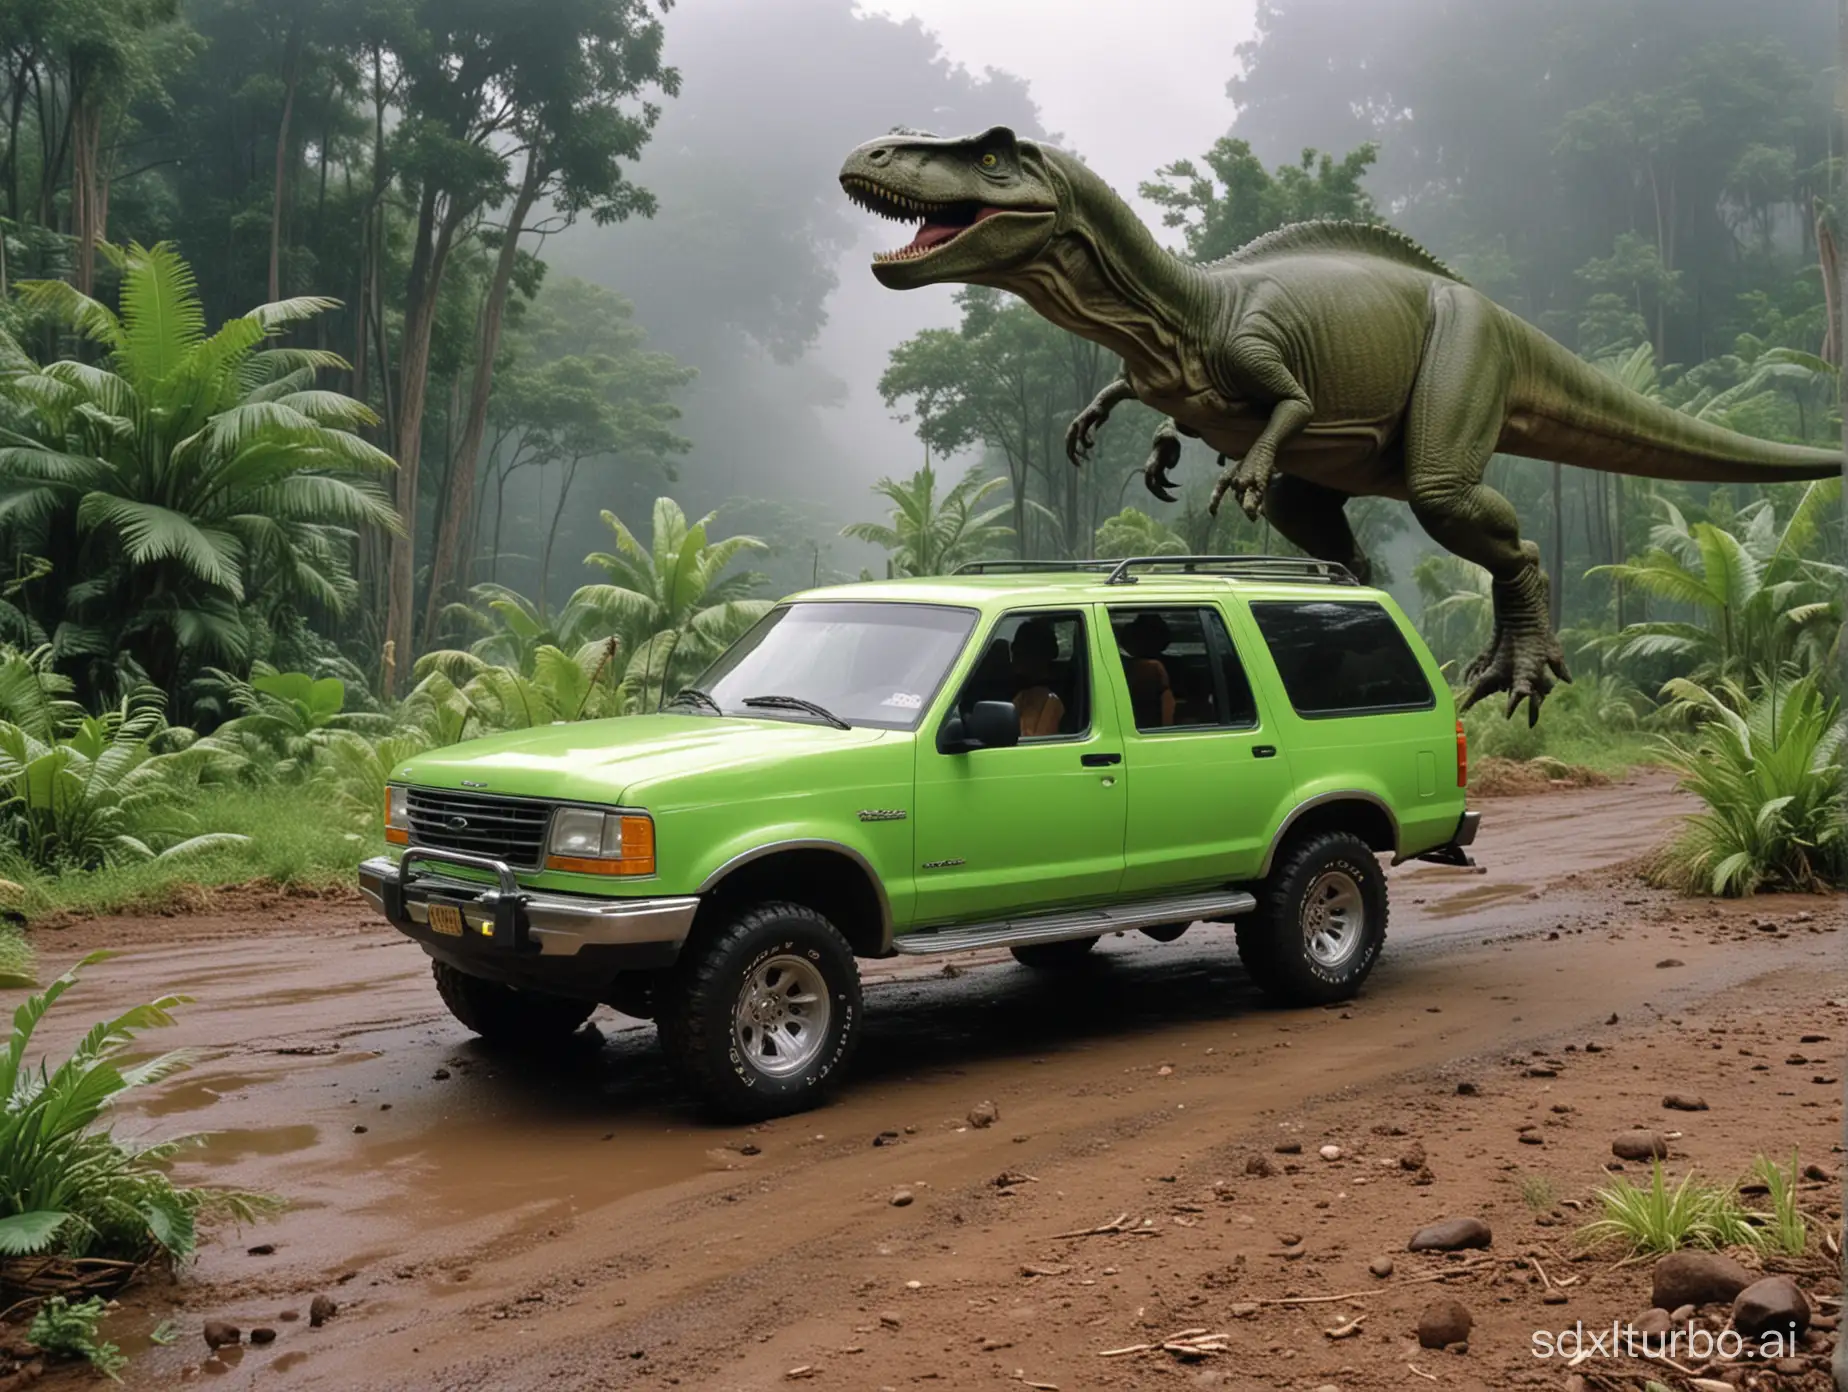 jurassic park 1993, ford explorer, neon green car, no dinosaur